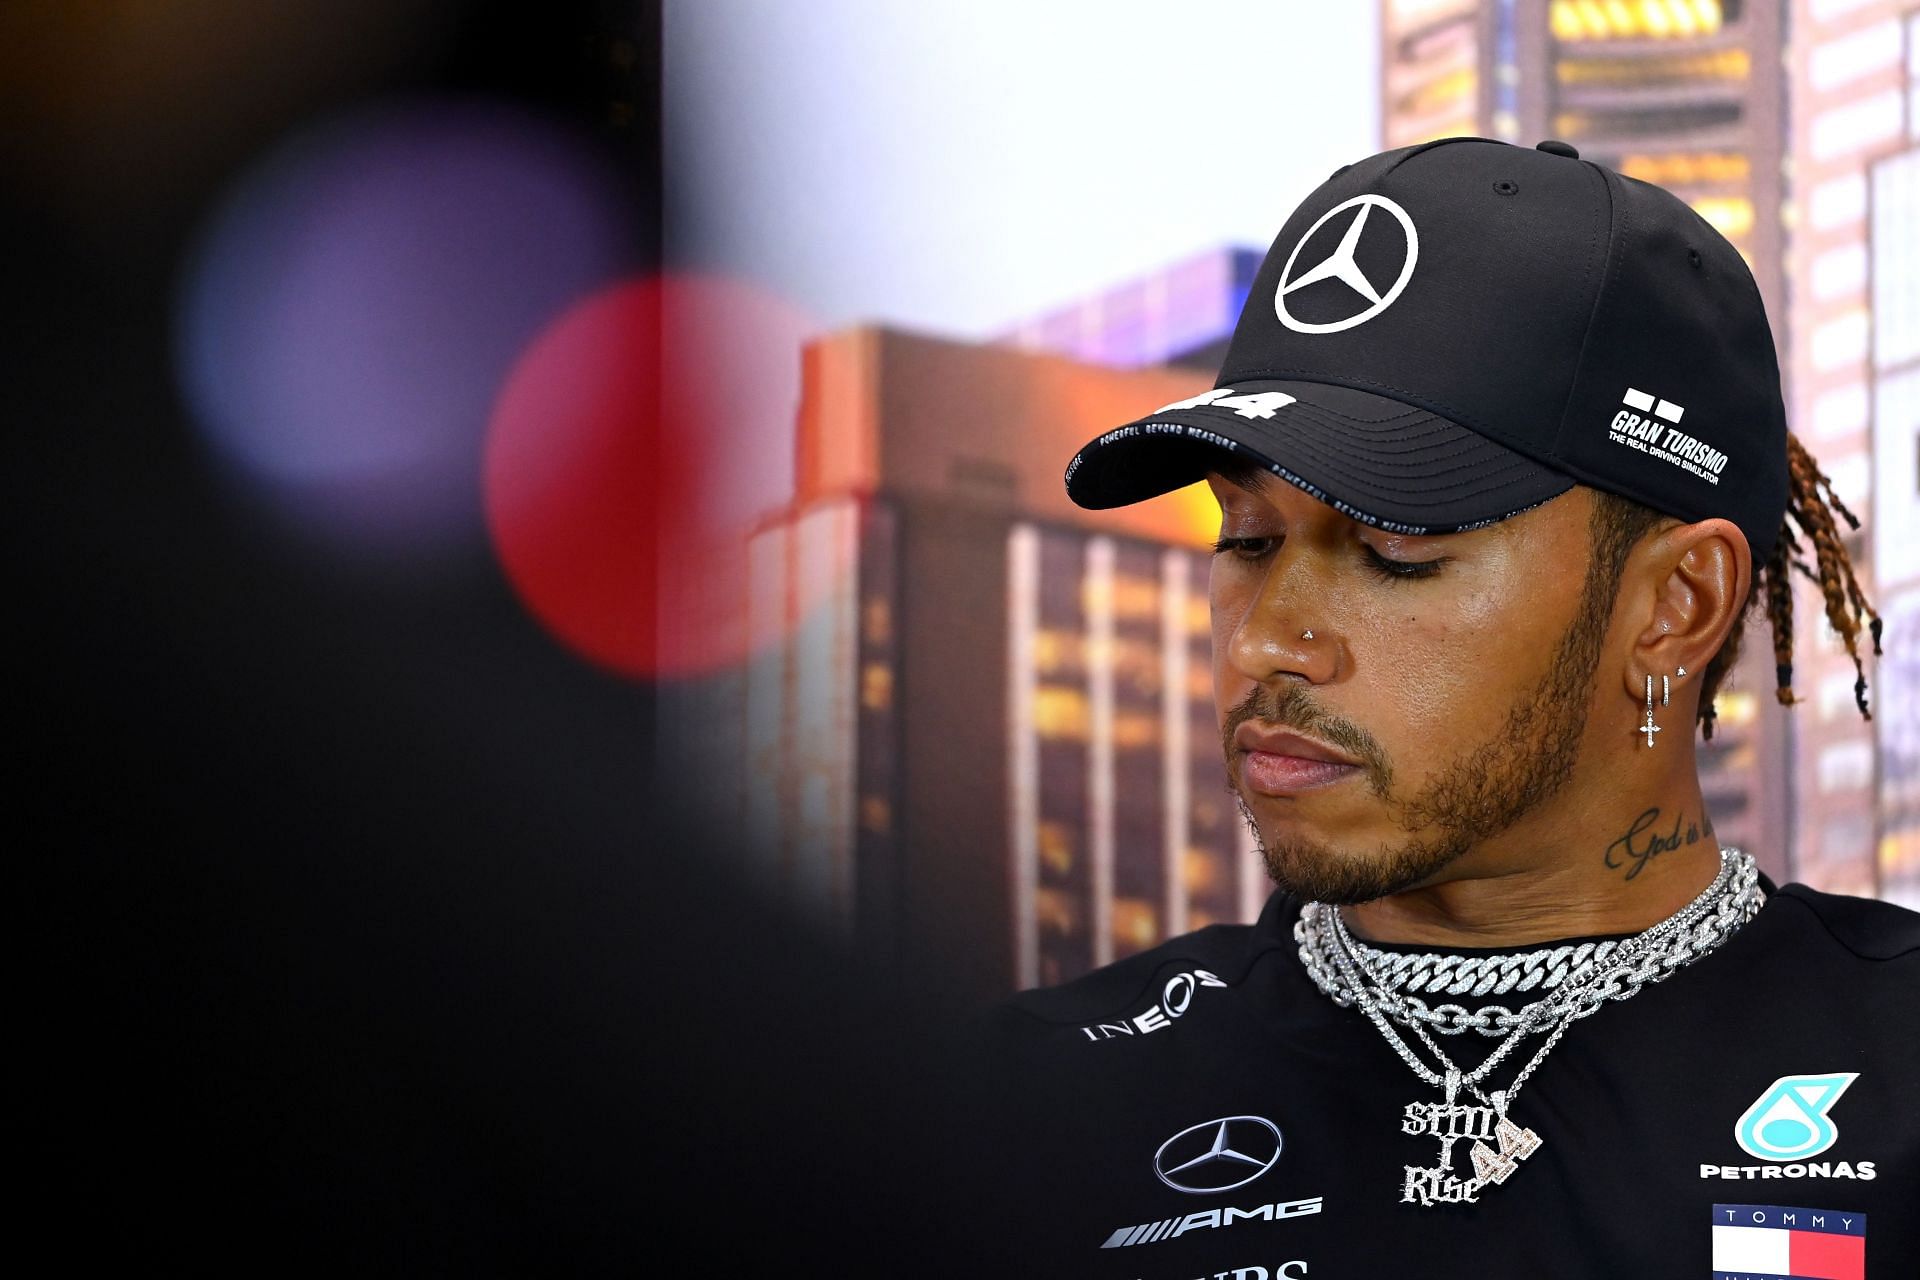 F1 Grand Prix of Australia - Lewis Hamilton attends a press conference